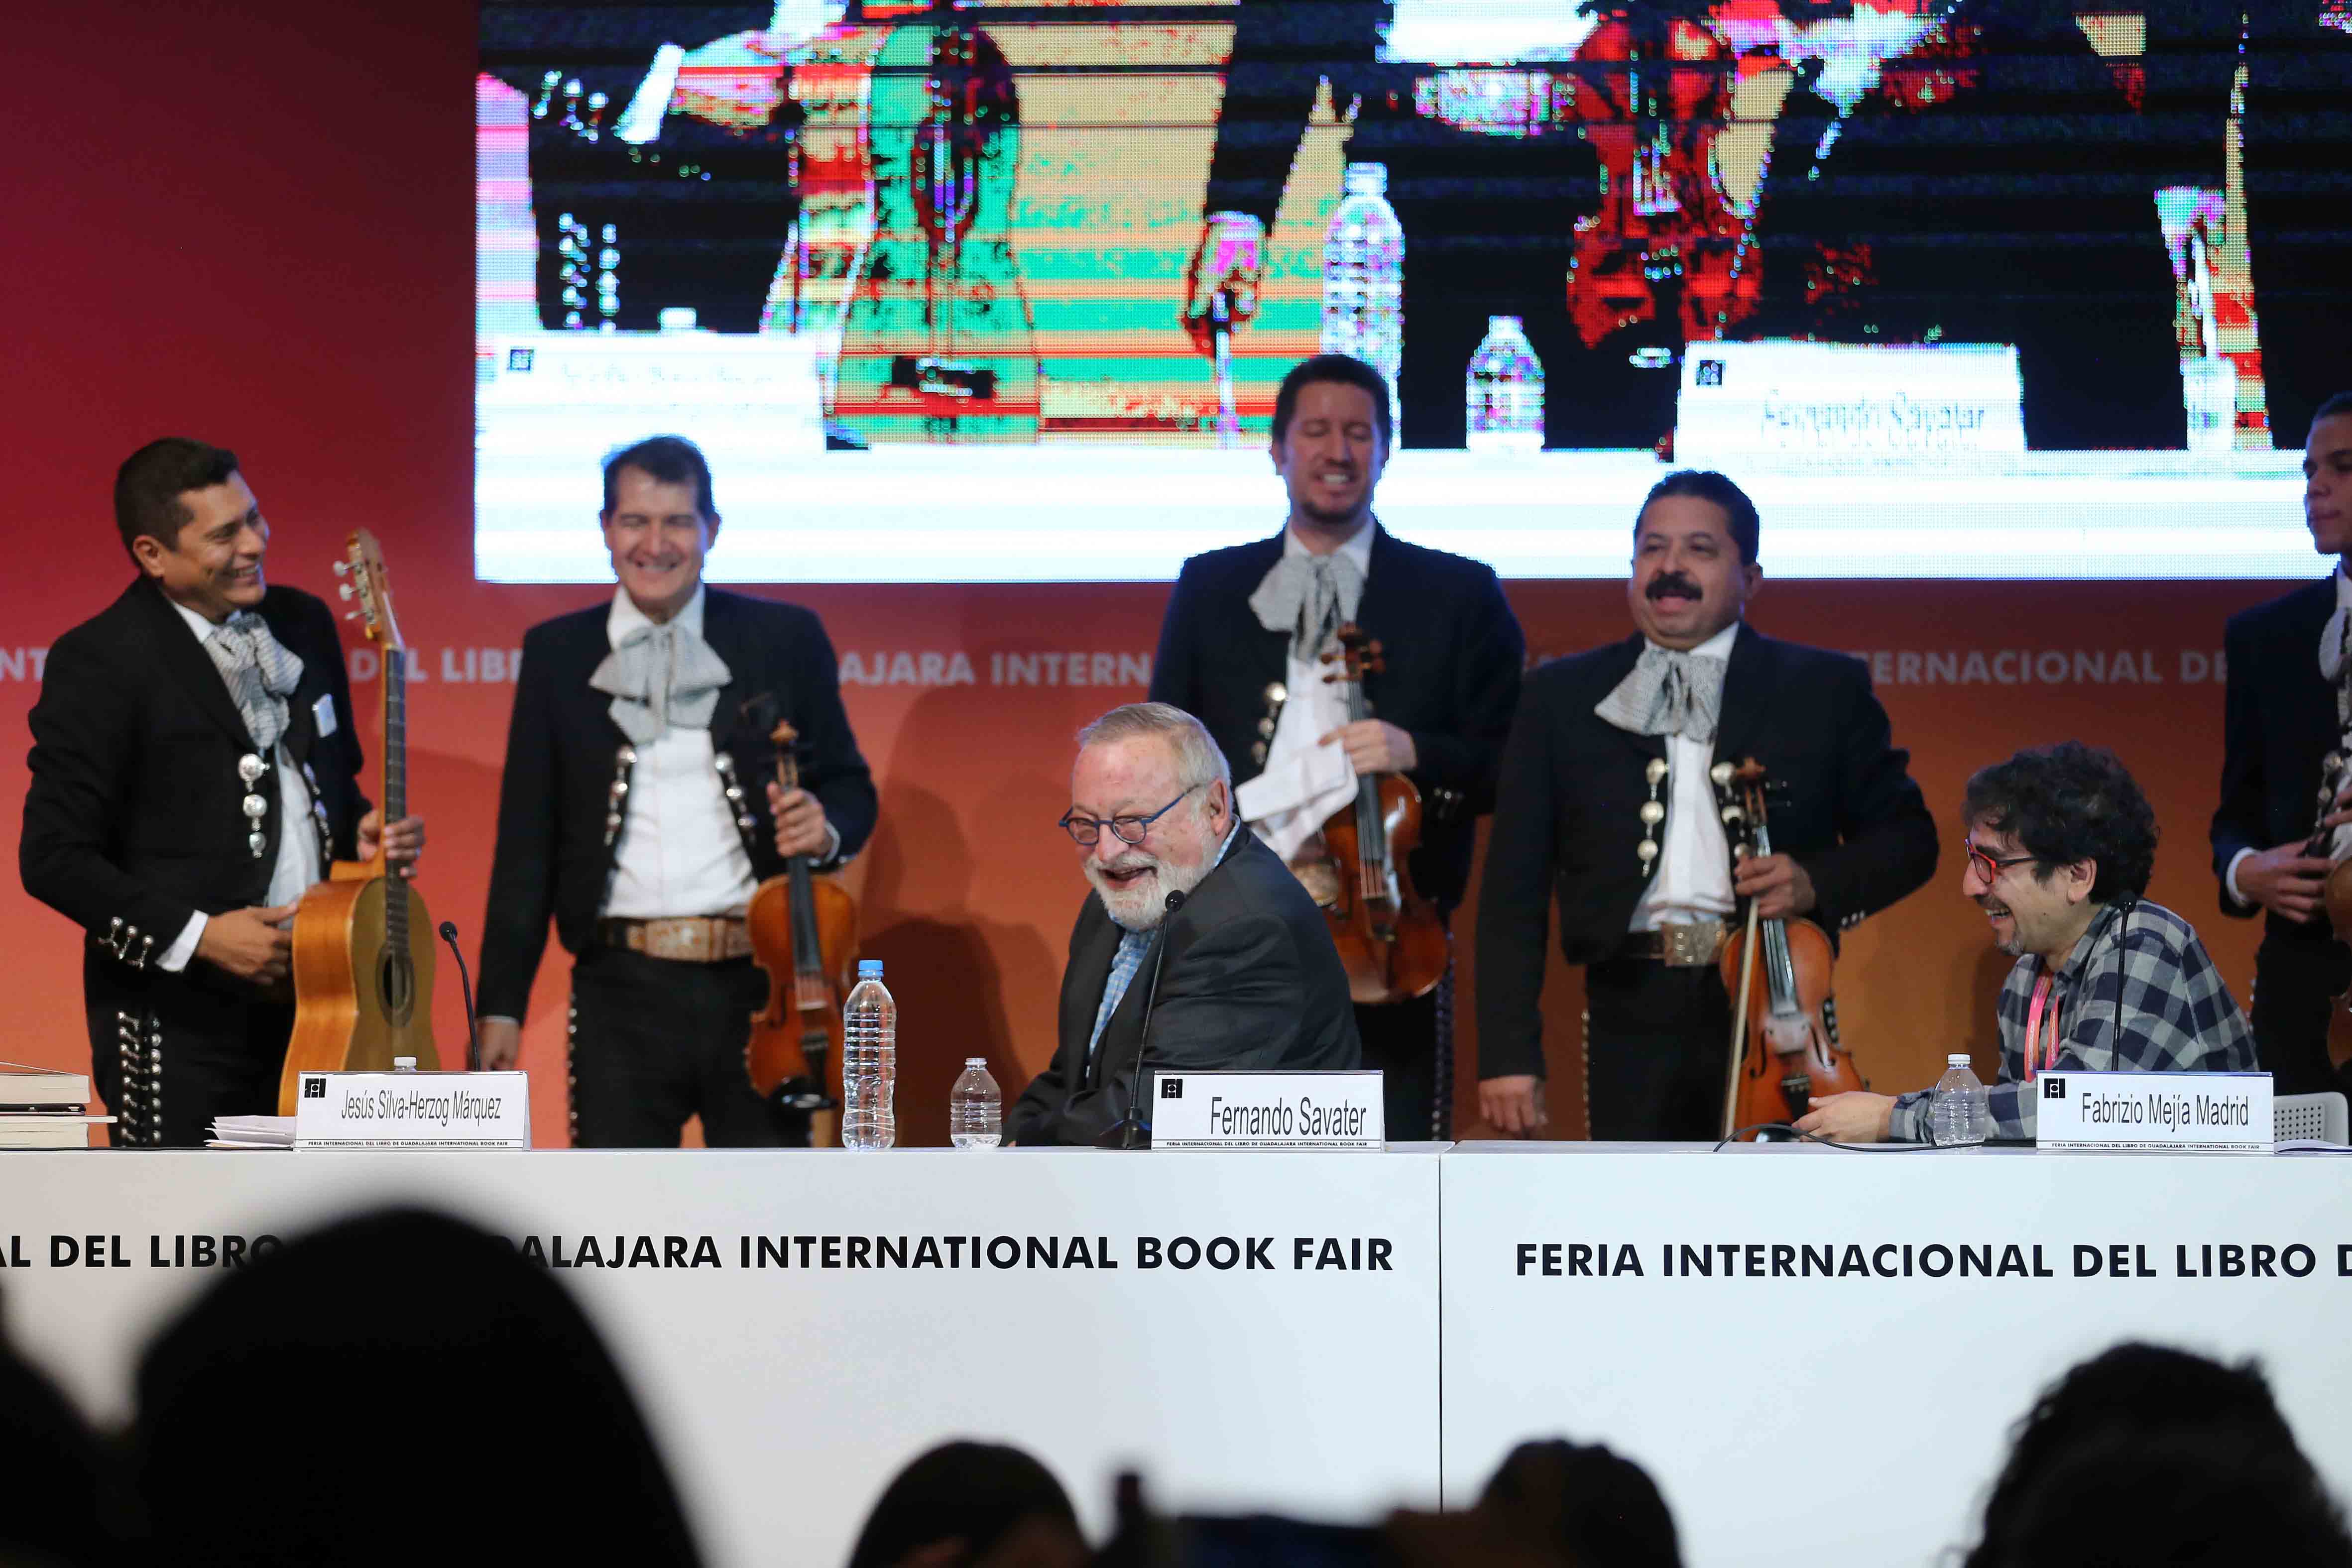 Presentación estelar, “Mil jóvenes con Savater”, en la Feria Internacional del Libro de Guadalajara (FIL)